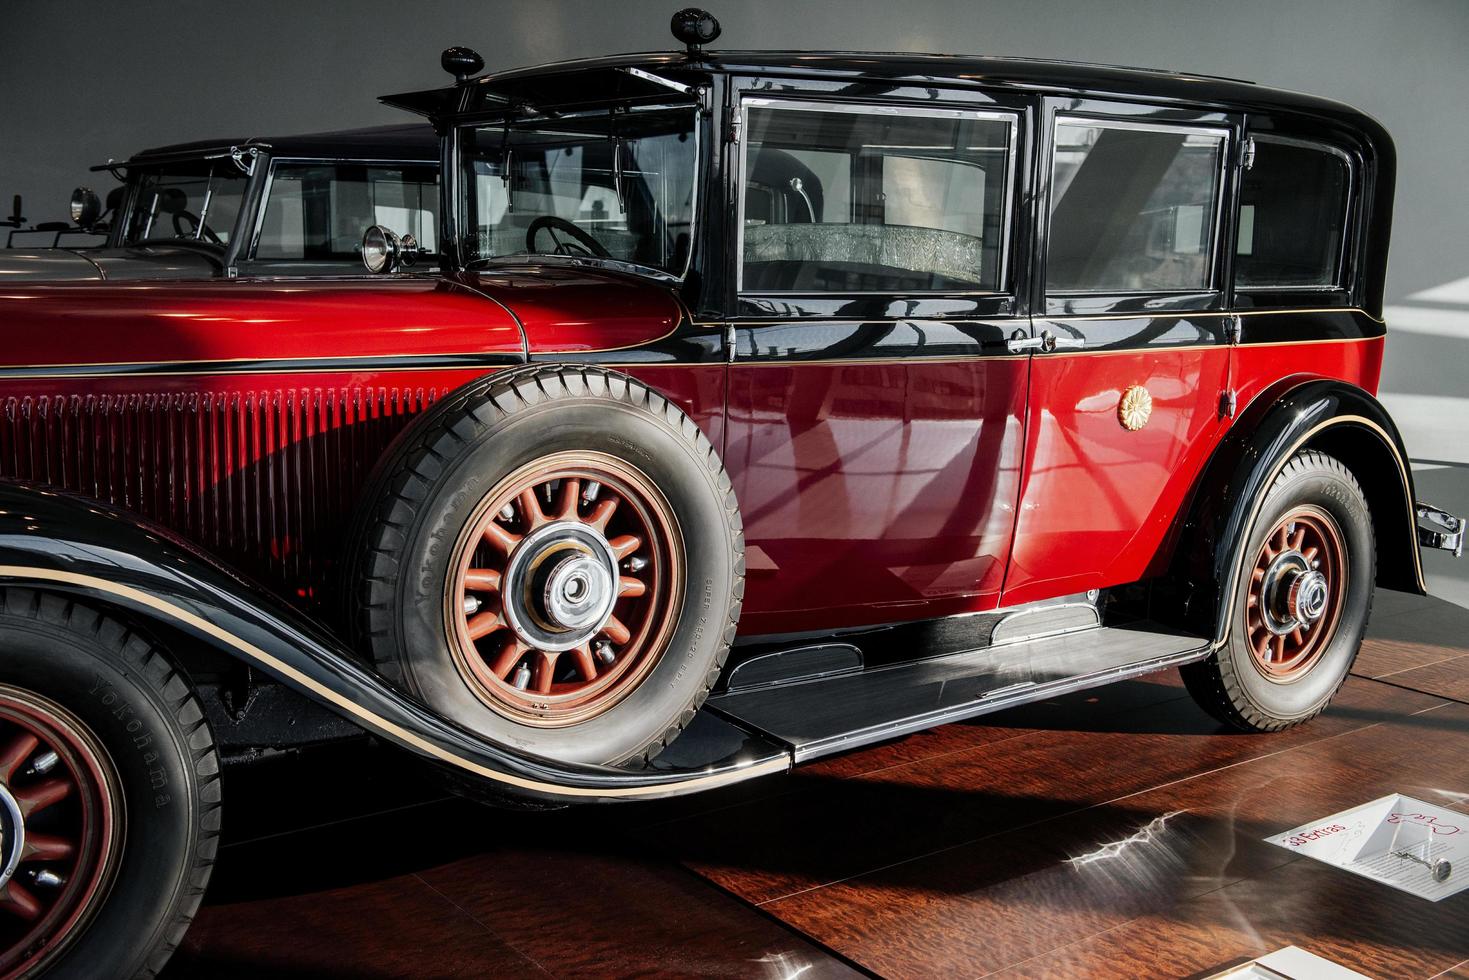 stuttgart, duitsland - 16 oktober 2018 mercedes museum. twee auto's. klassiek rood oud voertuig. zijaanzicht. reservewiel aan de zijkant foto